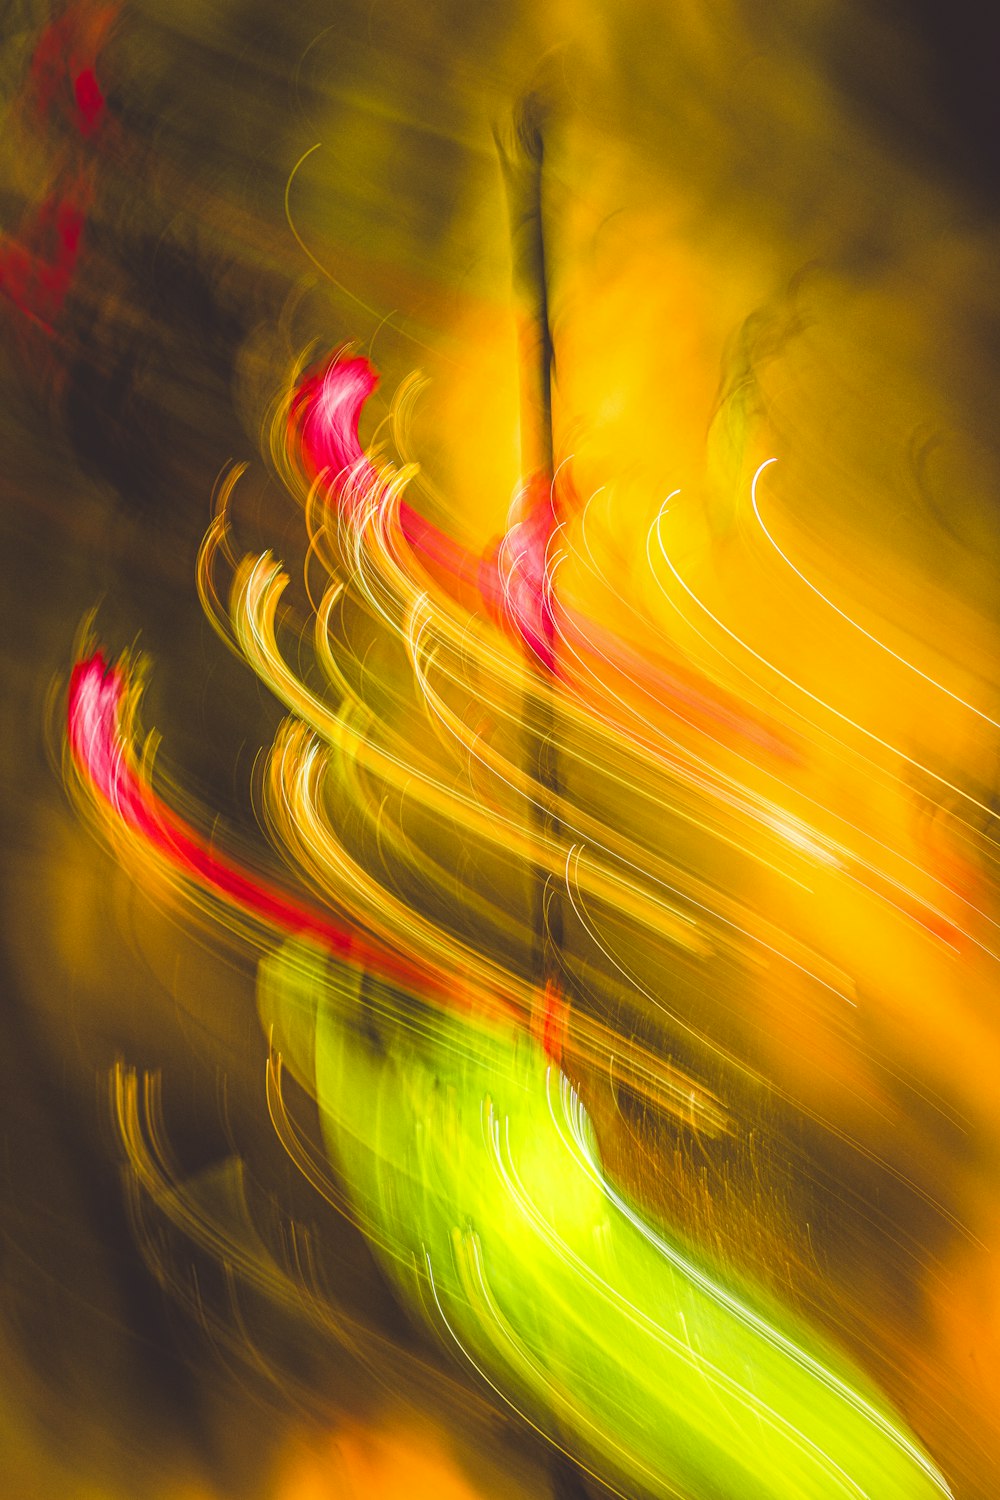 a blurry photo of a street light